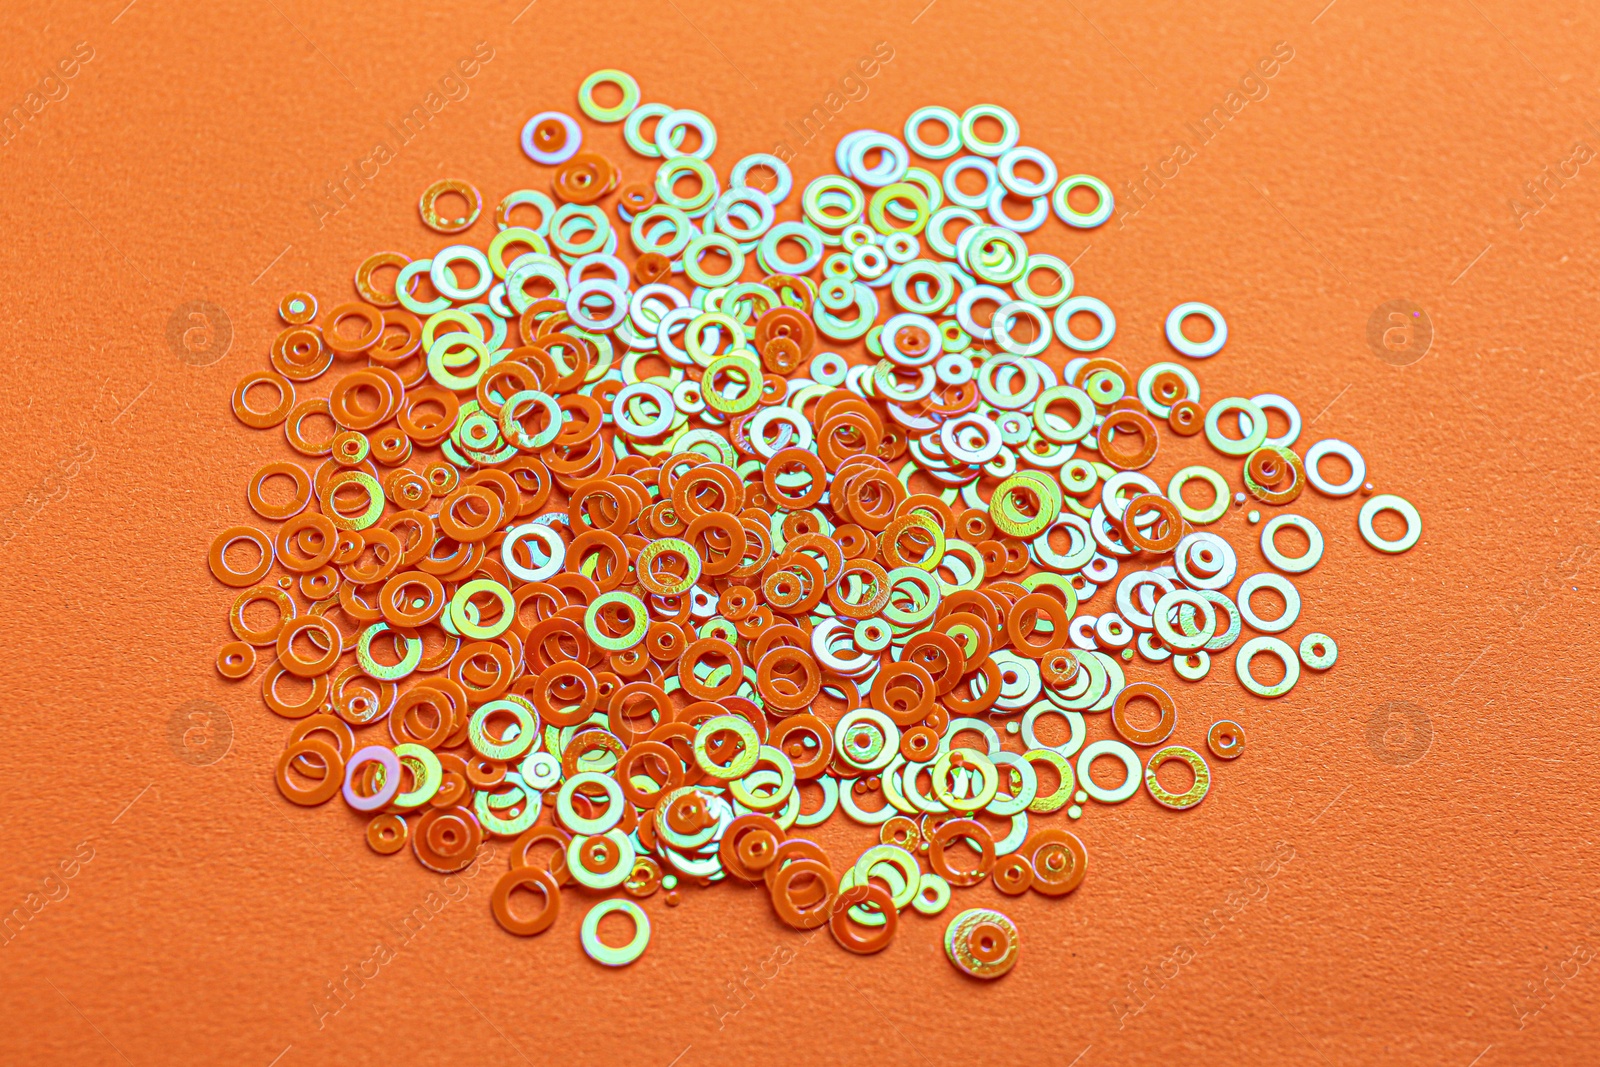 Photo of Pile of shiny bright glitter on orange background